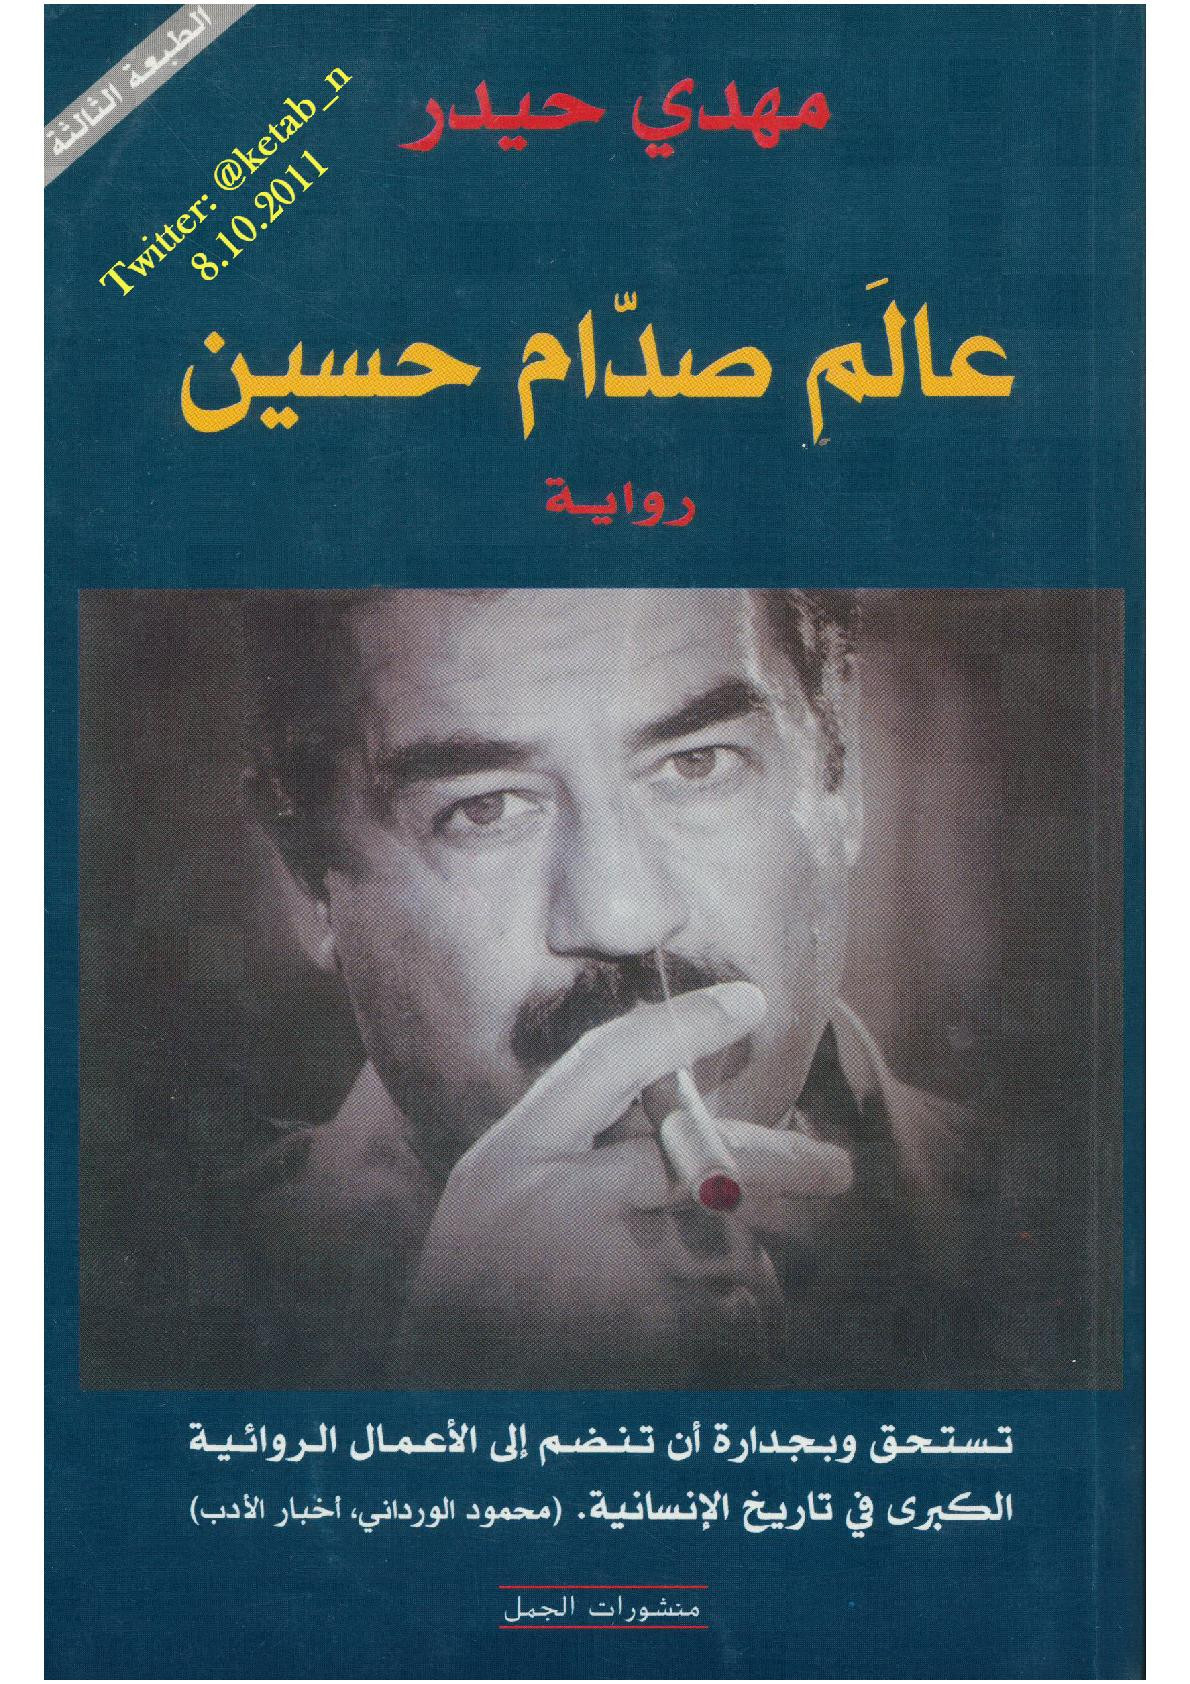 عالم صدام حسين رواية لـ مهدي حيدر